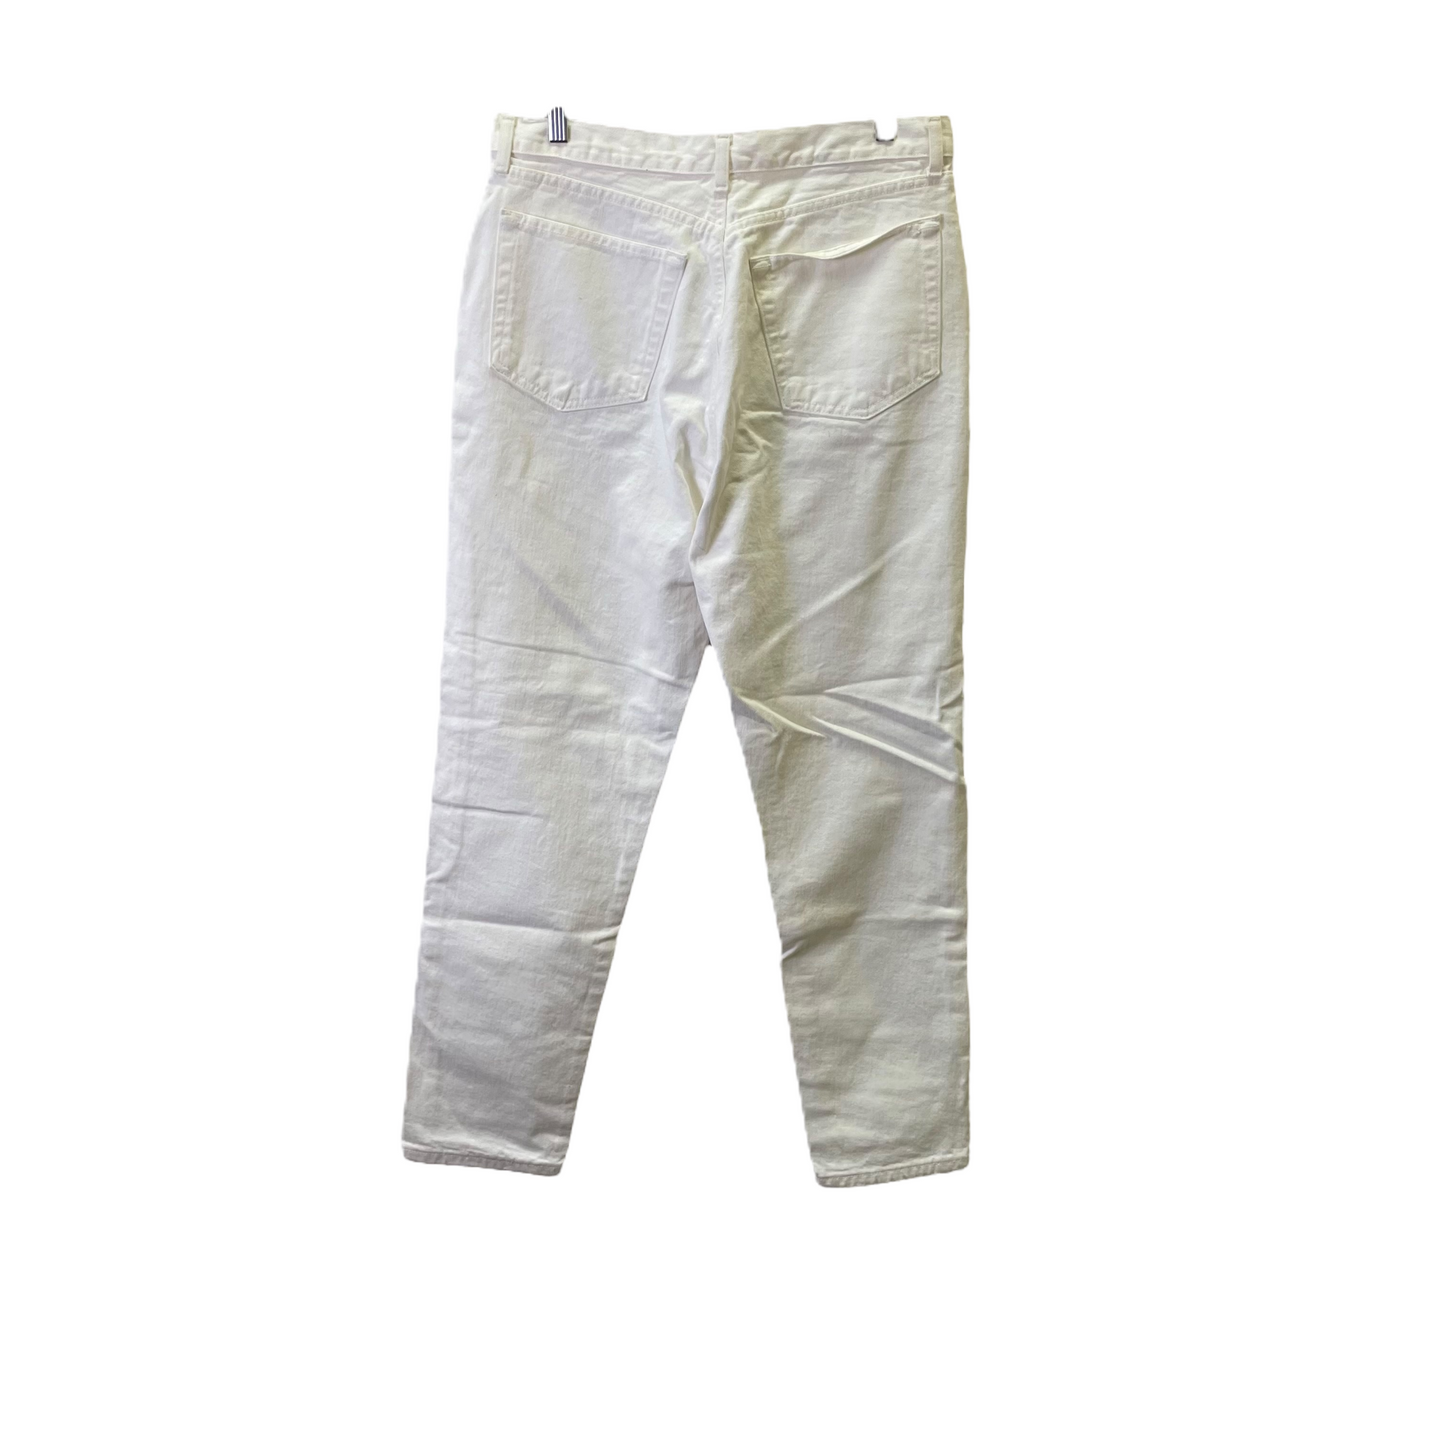 White Pants Cropped By Banana Republic, Size: 14